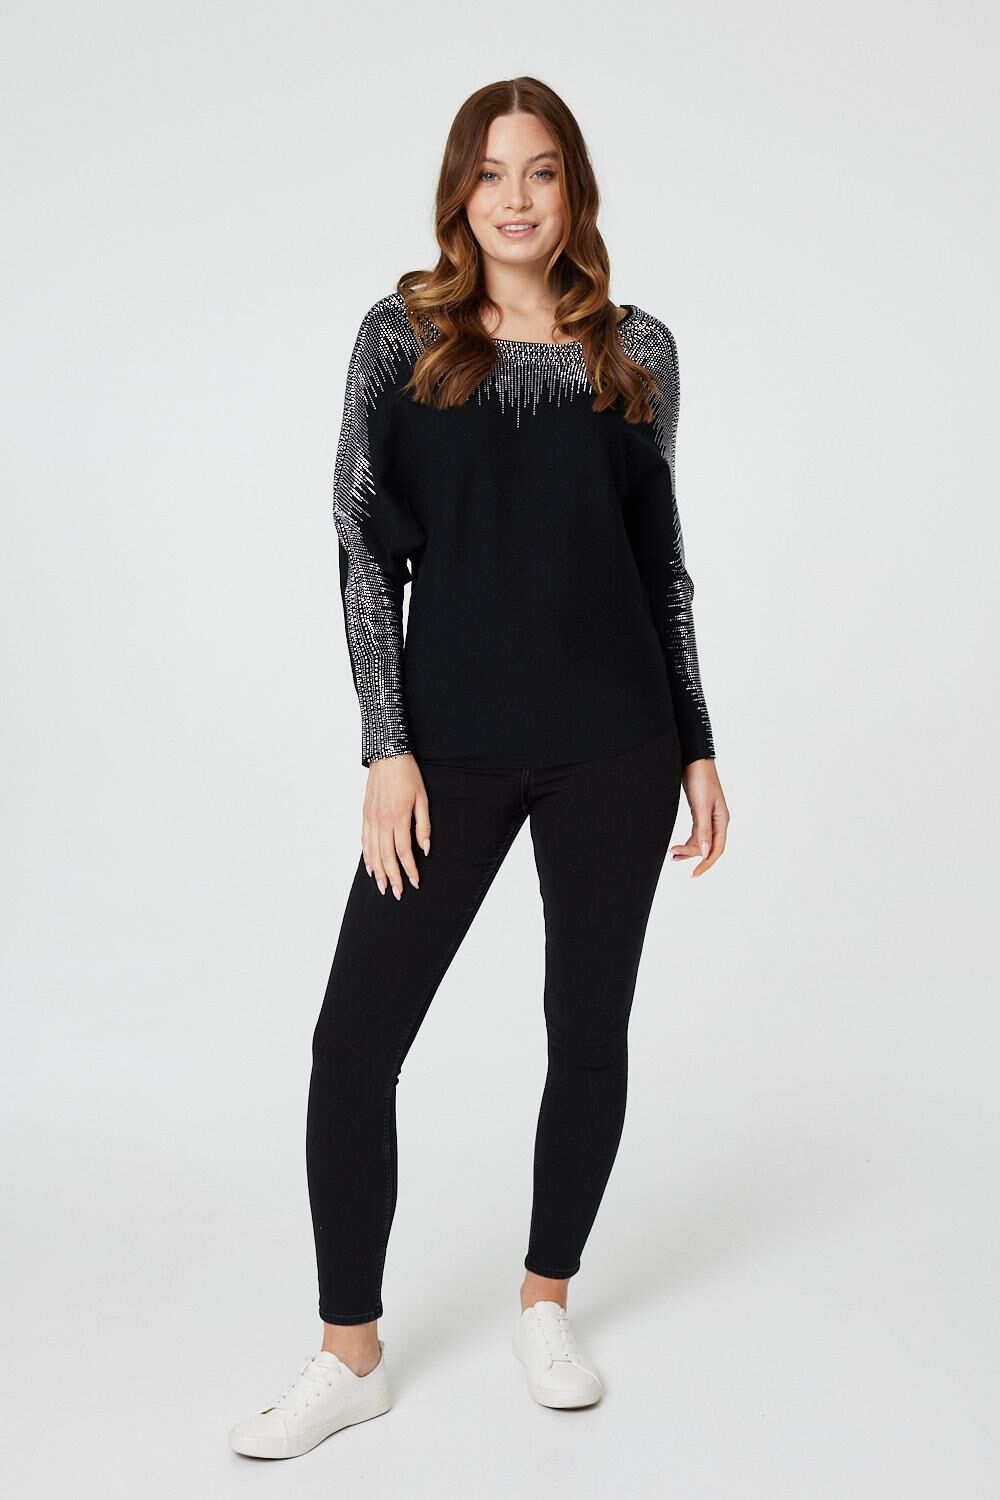 Izabel London Black - Embellished Diamante Knit Jumper, Size: 14